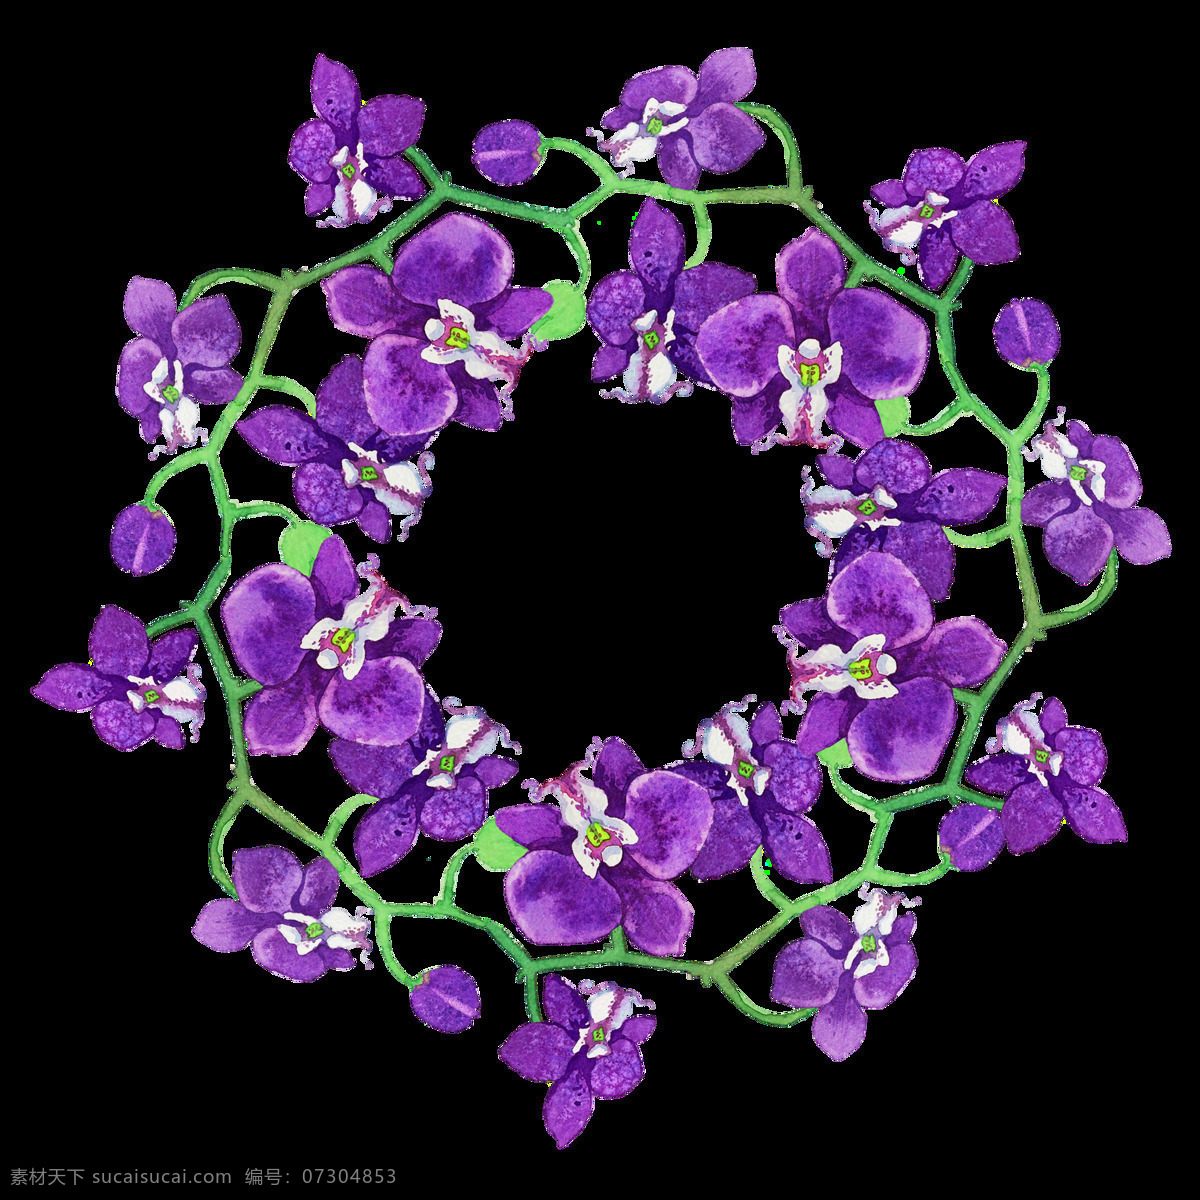 紫色 花卉 透明 装饰 抠图专用 设计素材